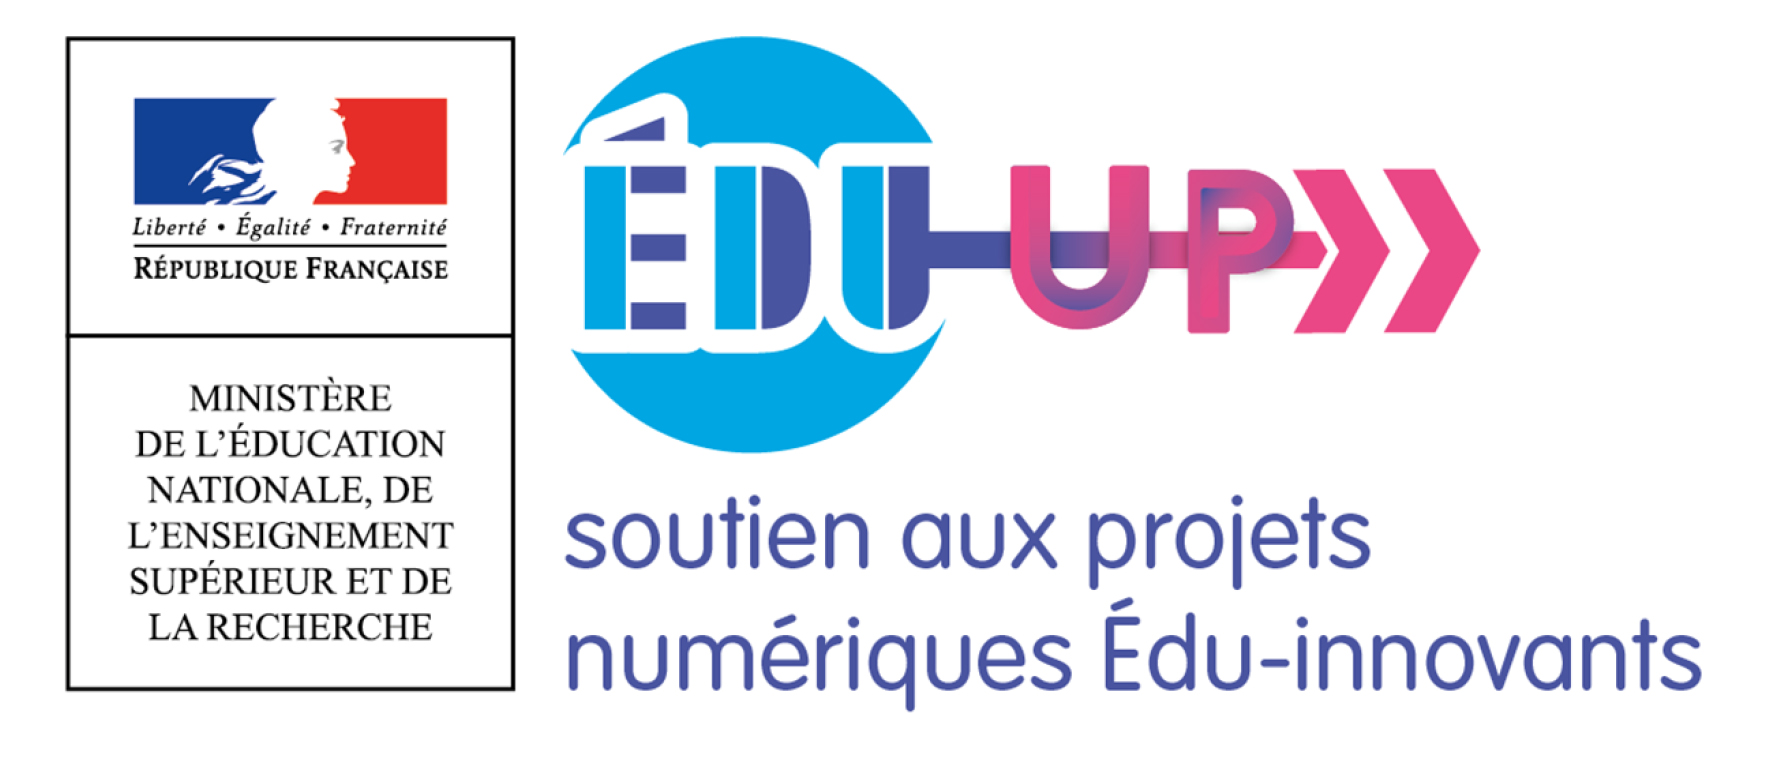 Logo Edu-up